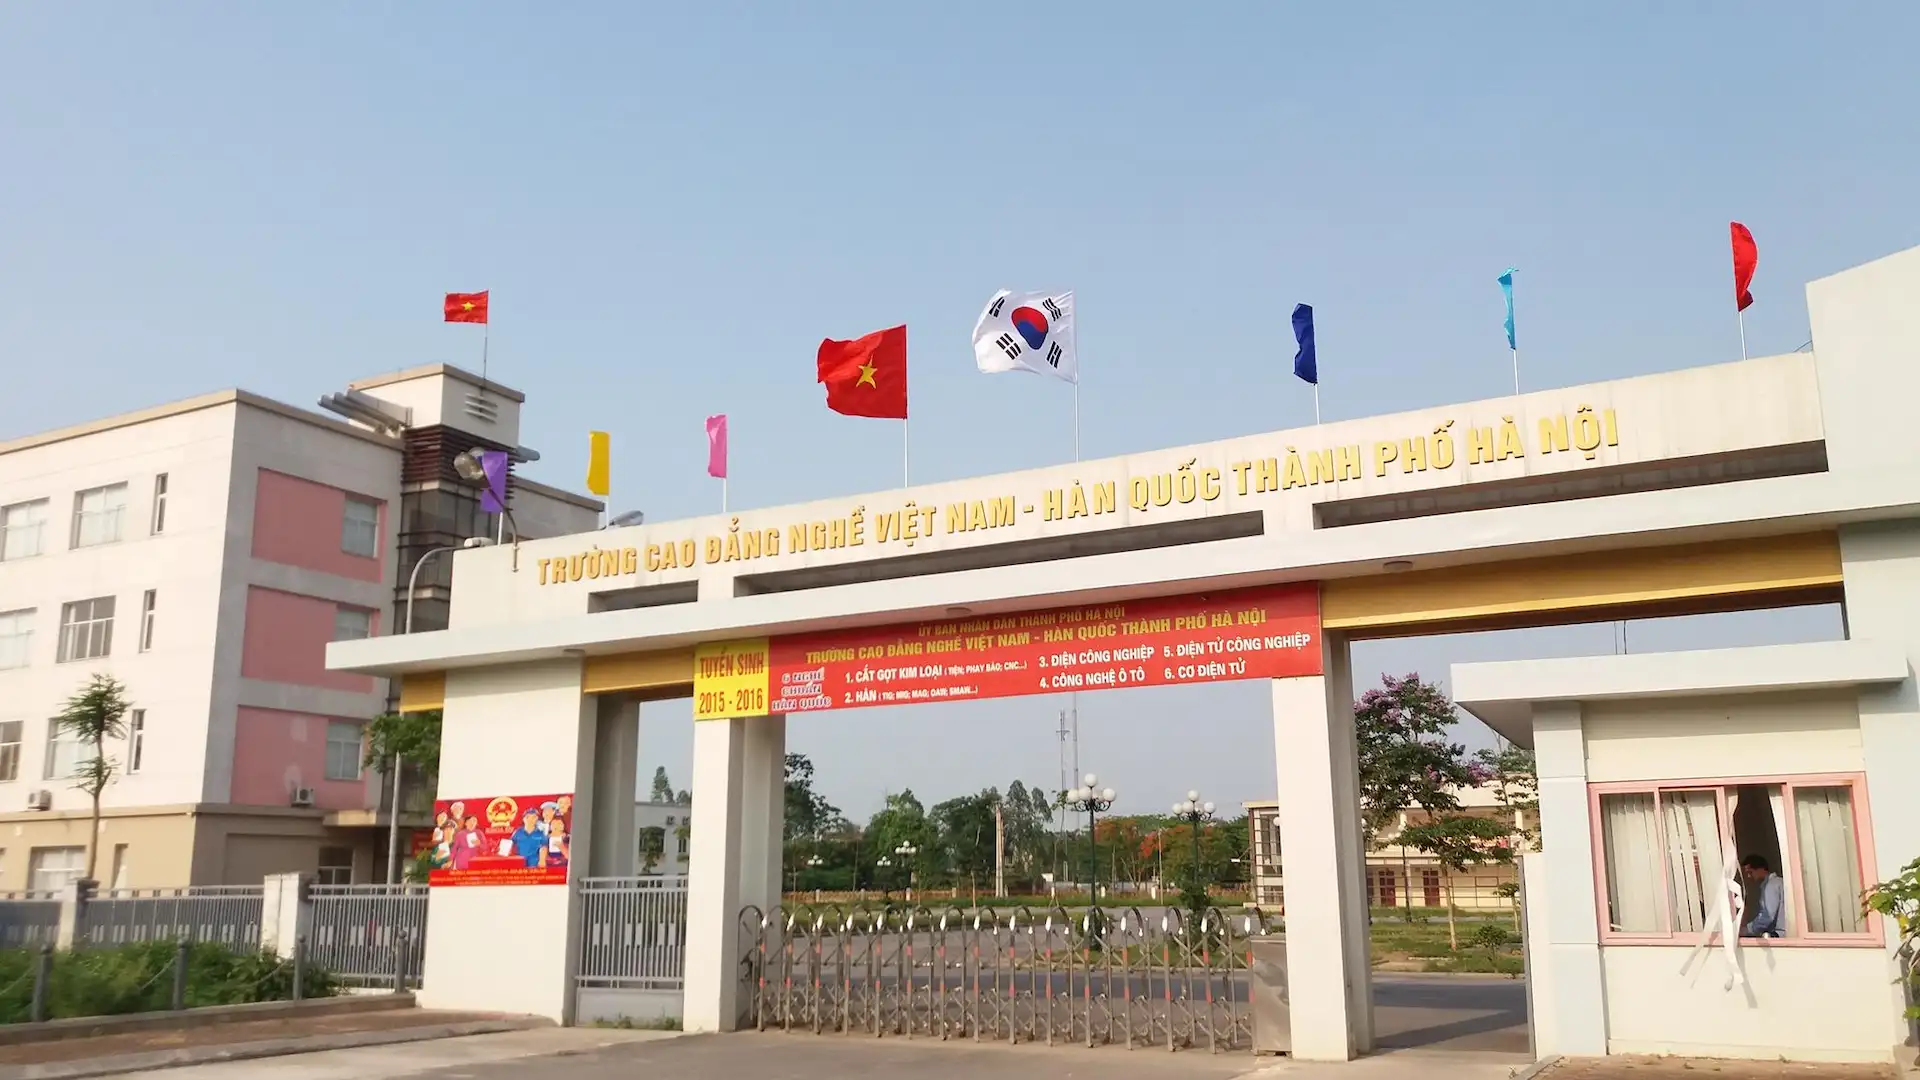 Cao đẳng nghề Việt Nam – Hàn Quốc thành phố Hà Nội